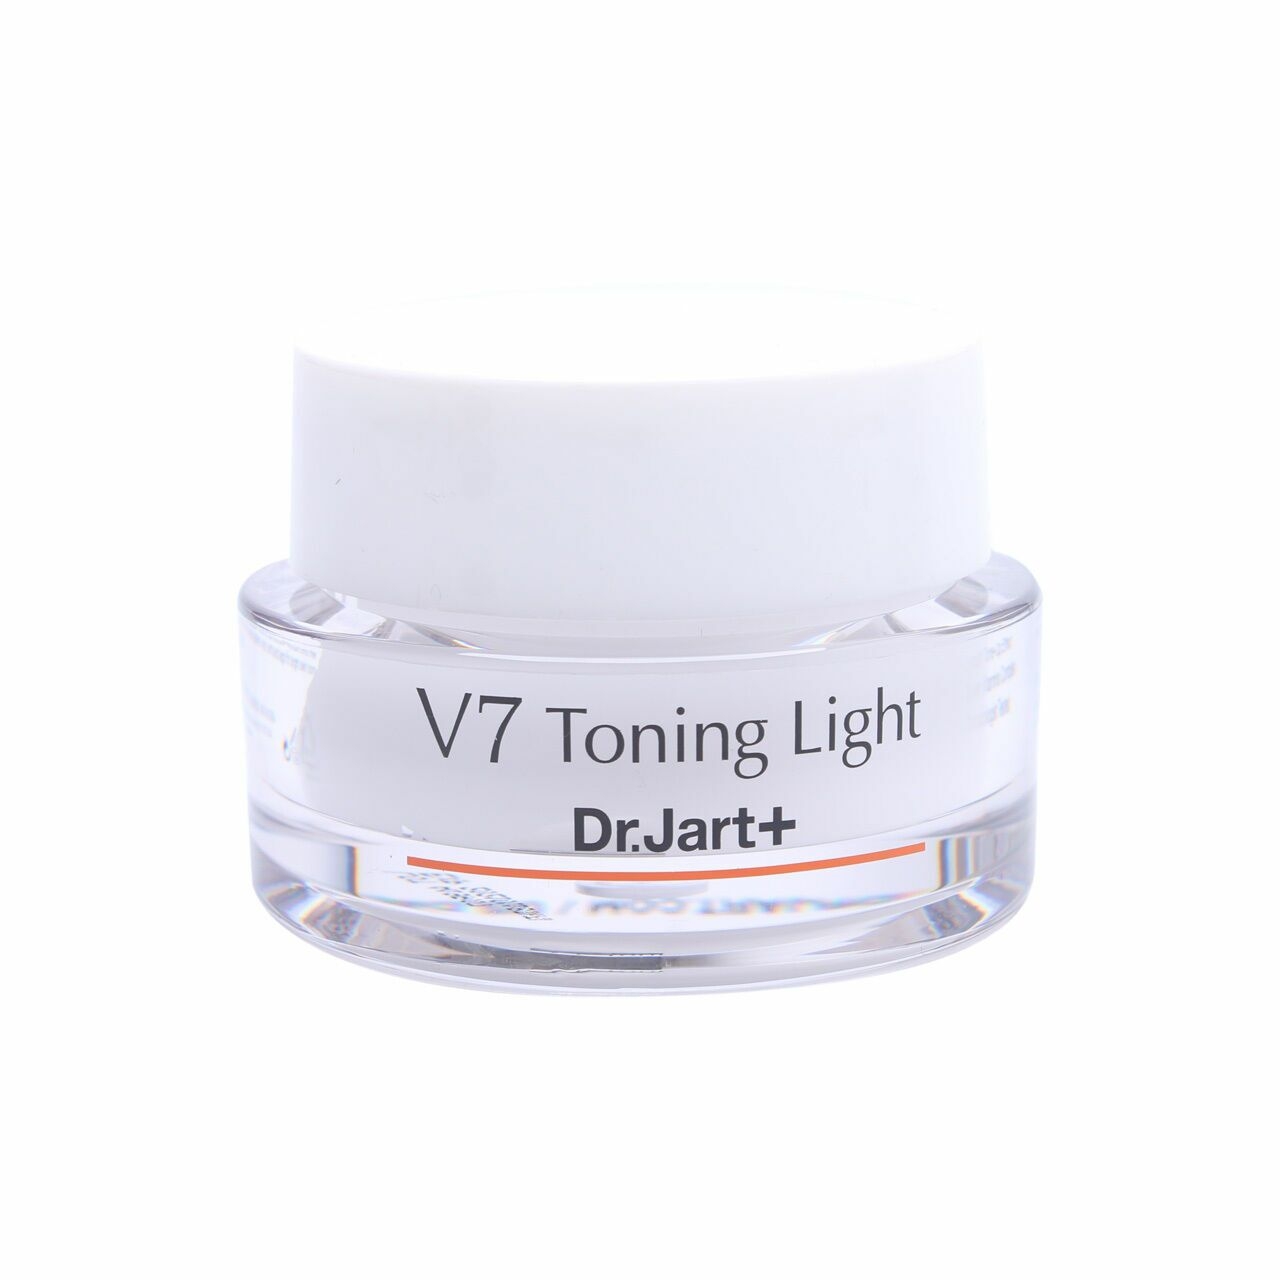 Dr.Jart+ V7 Toning Light Skin Care